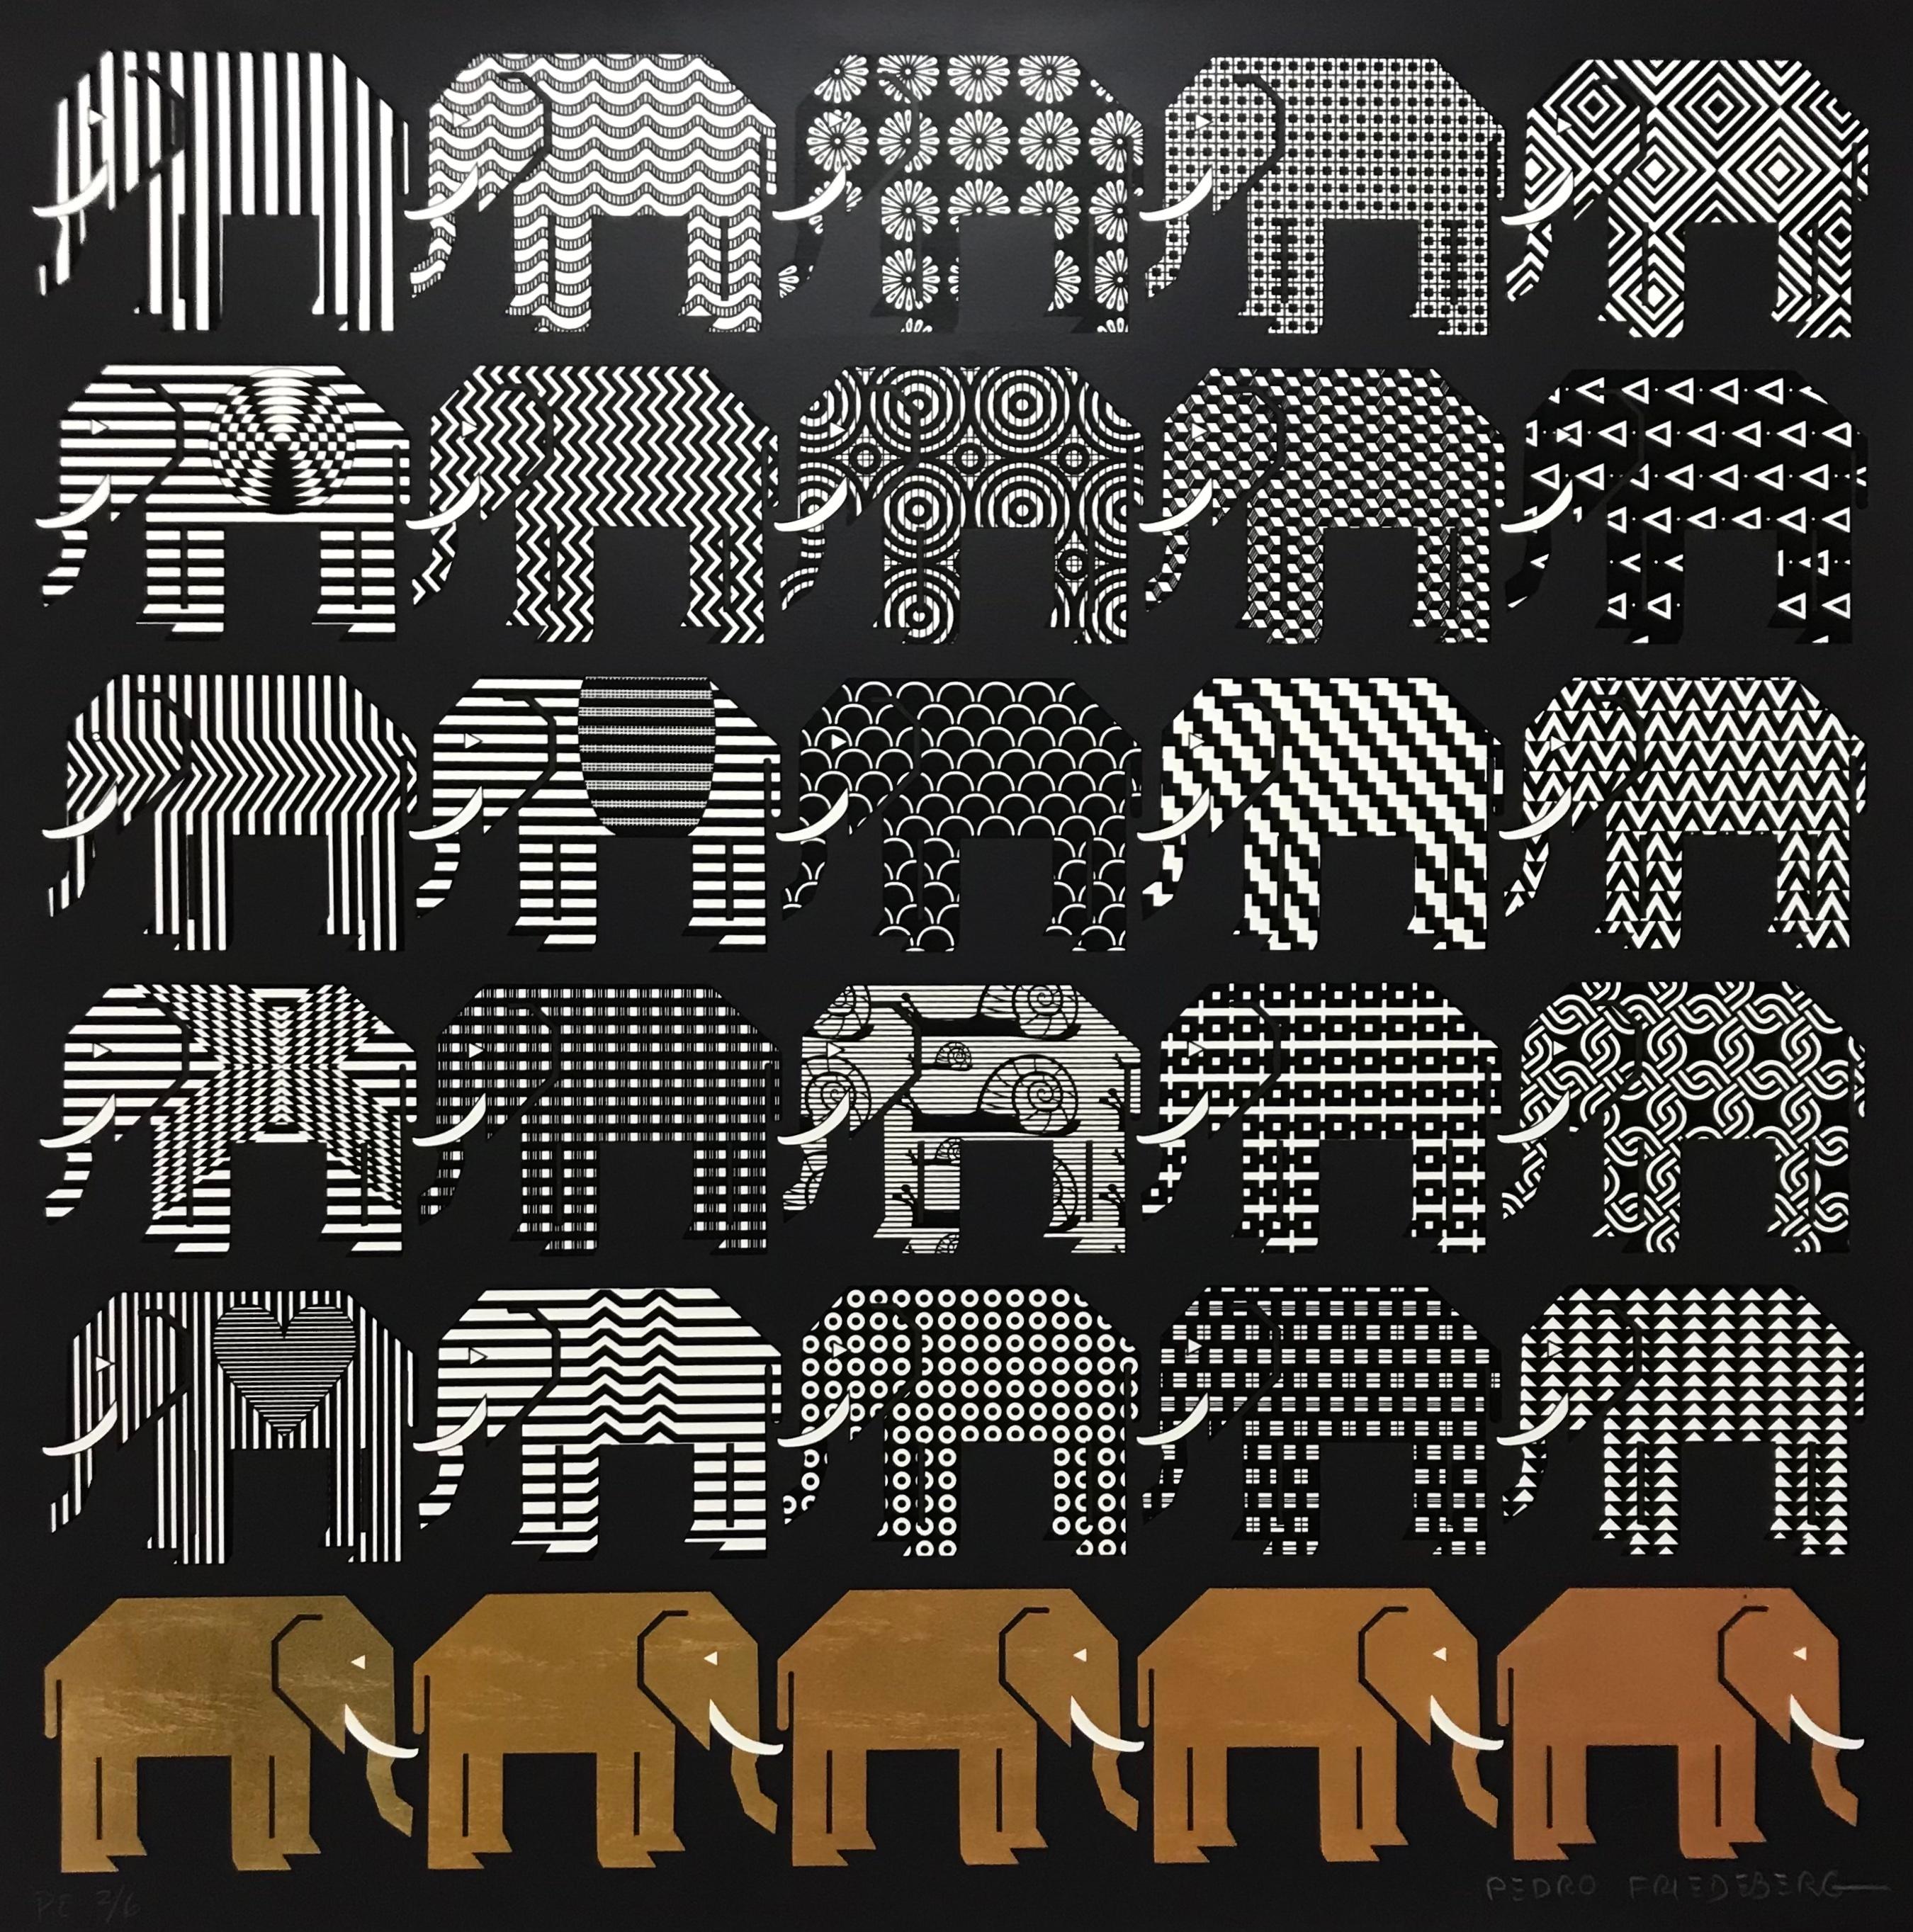 Elephants III